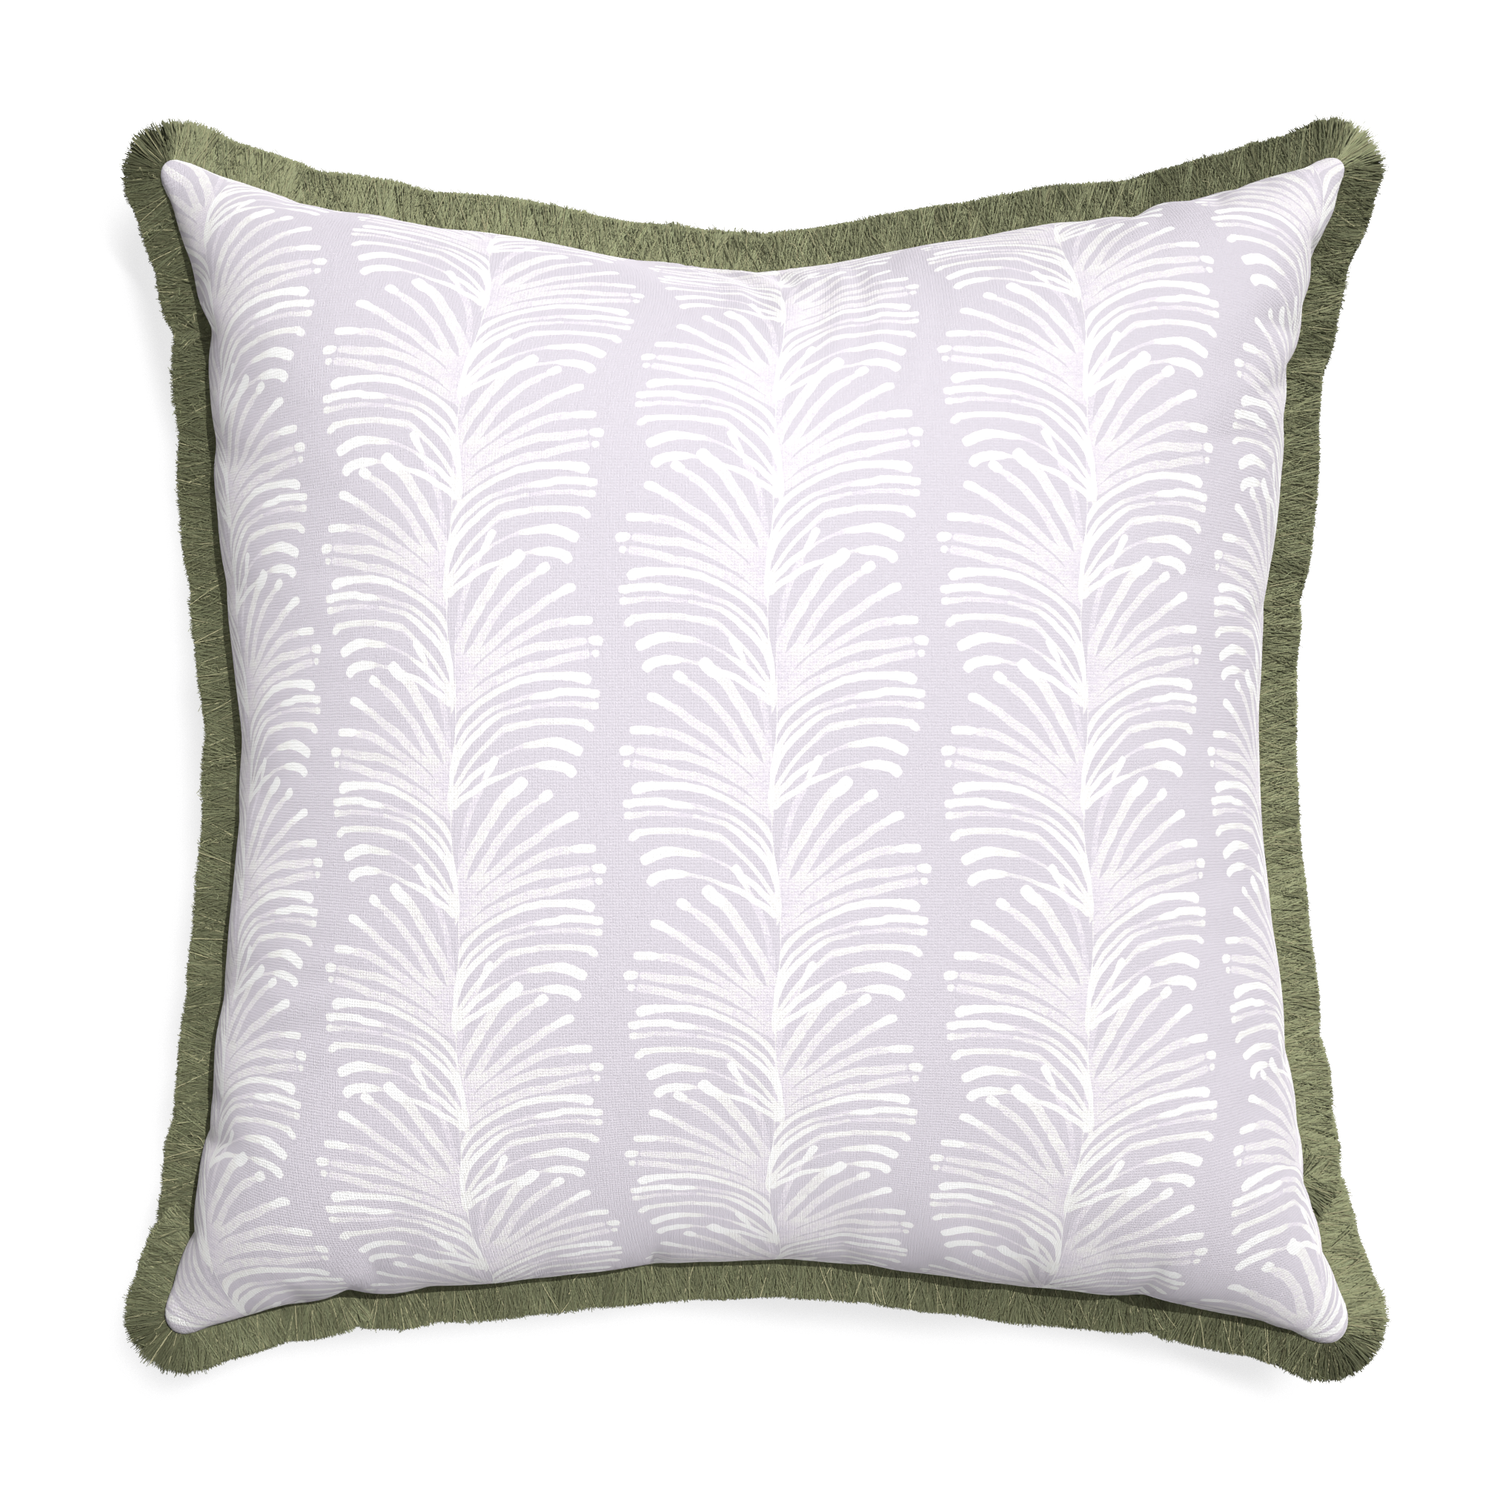 Euro-sham emma lavender custom lavender botanical stripepillow with sage fringe on white background